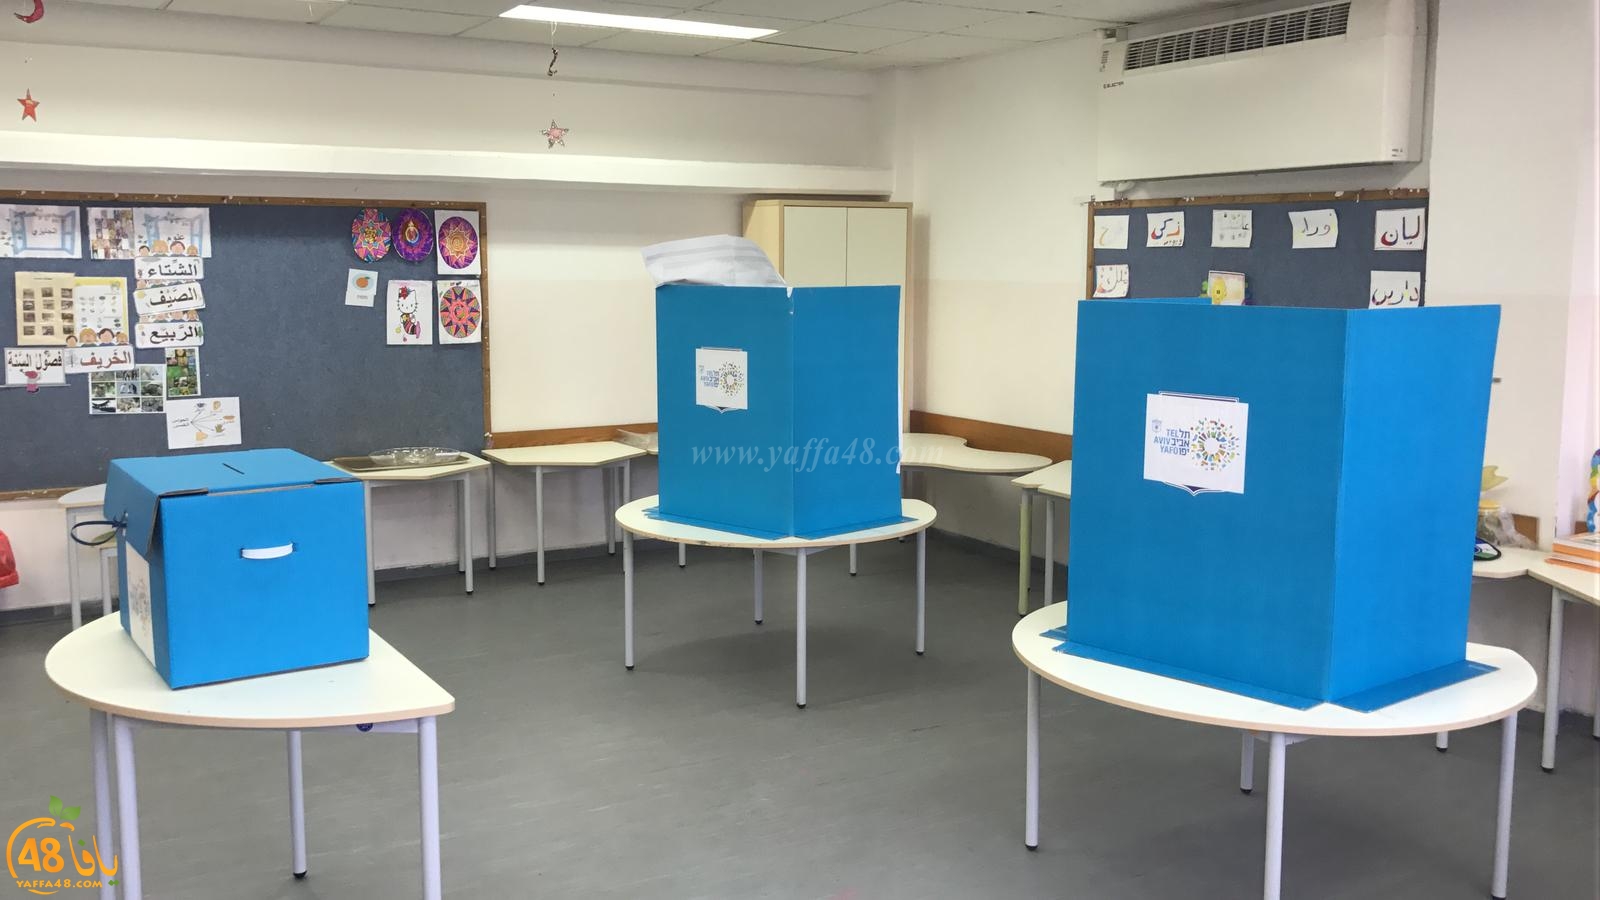 انطلاق العملية الانتخابية - 6.5 مليون صاحب حق اقتراع يدلون بأصواتهم